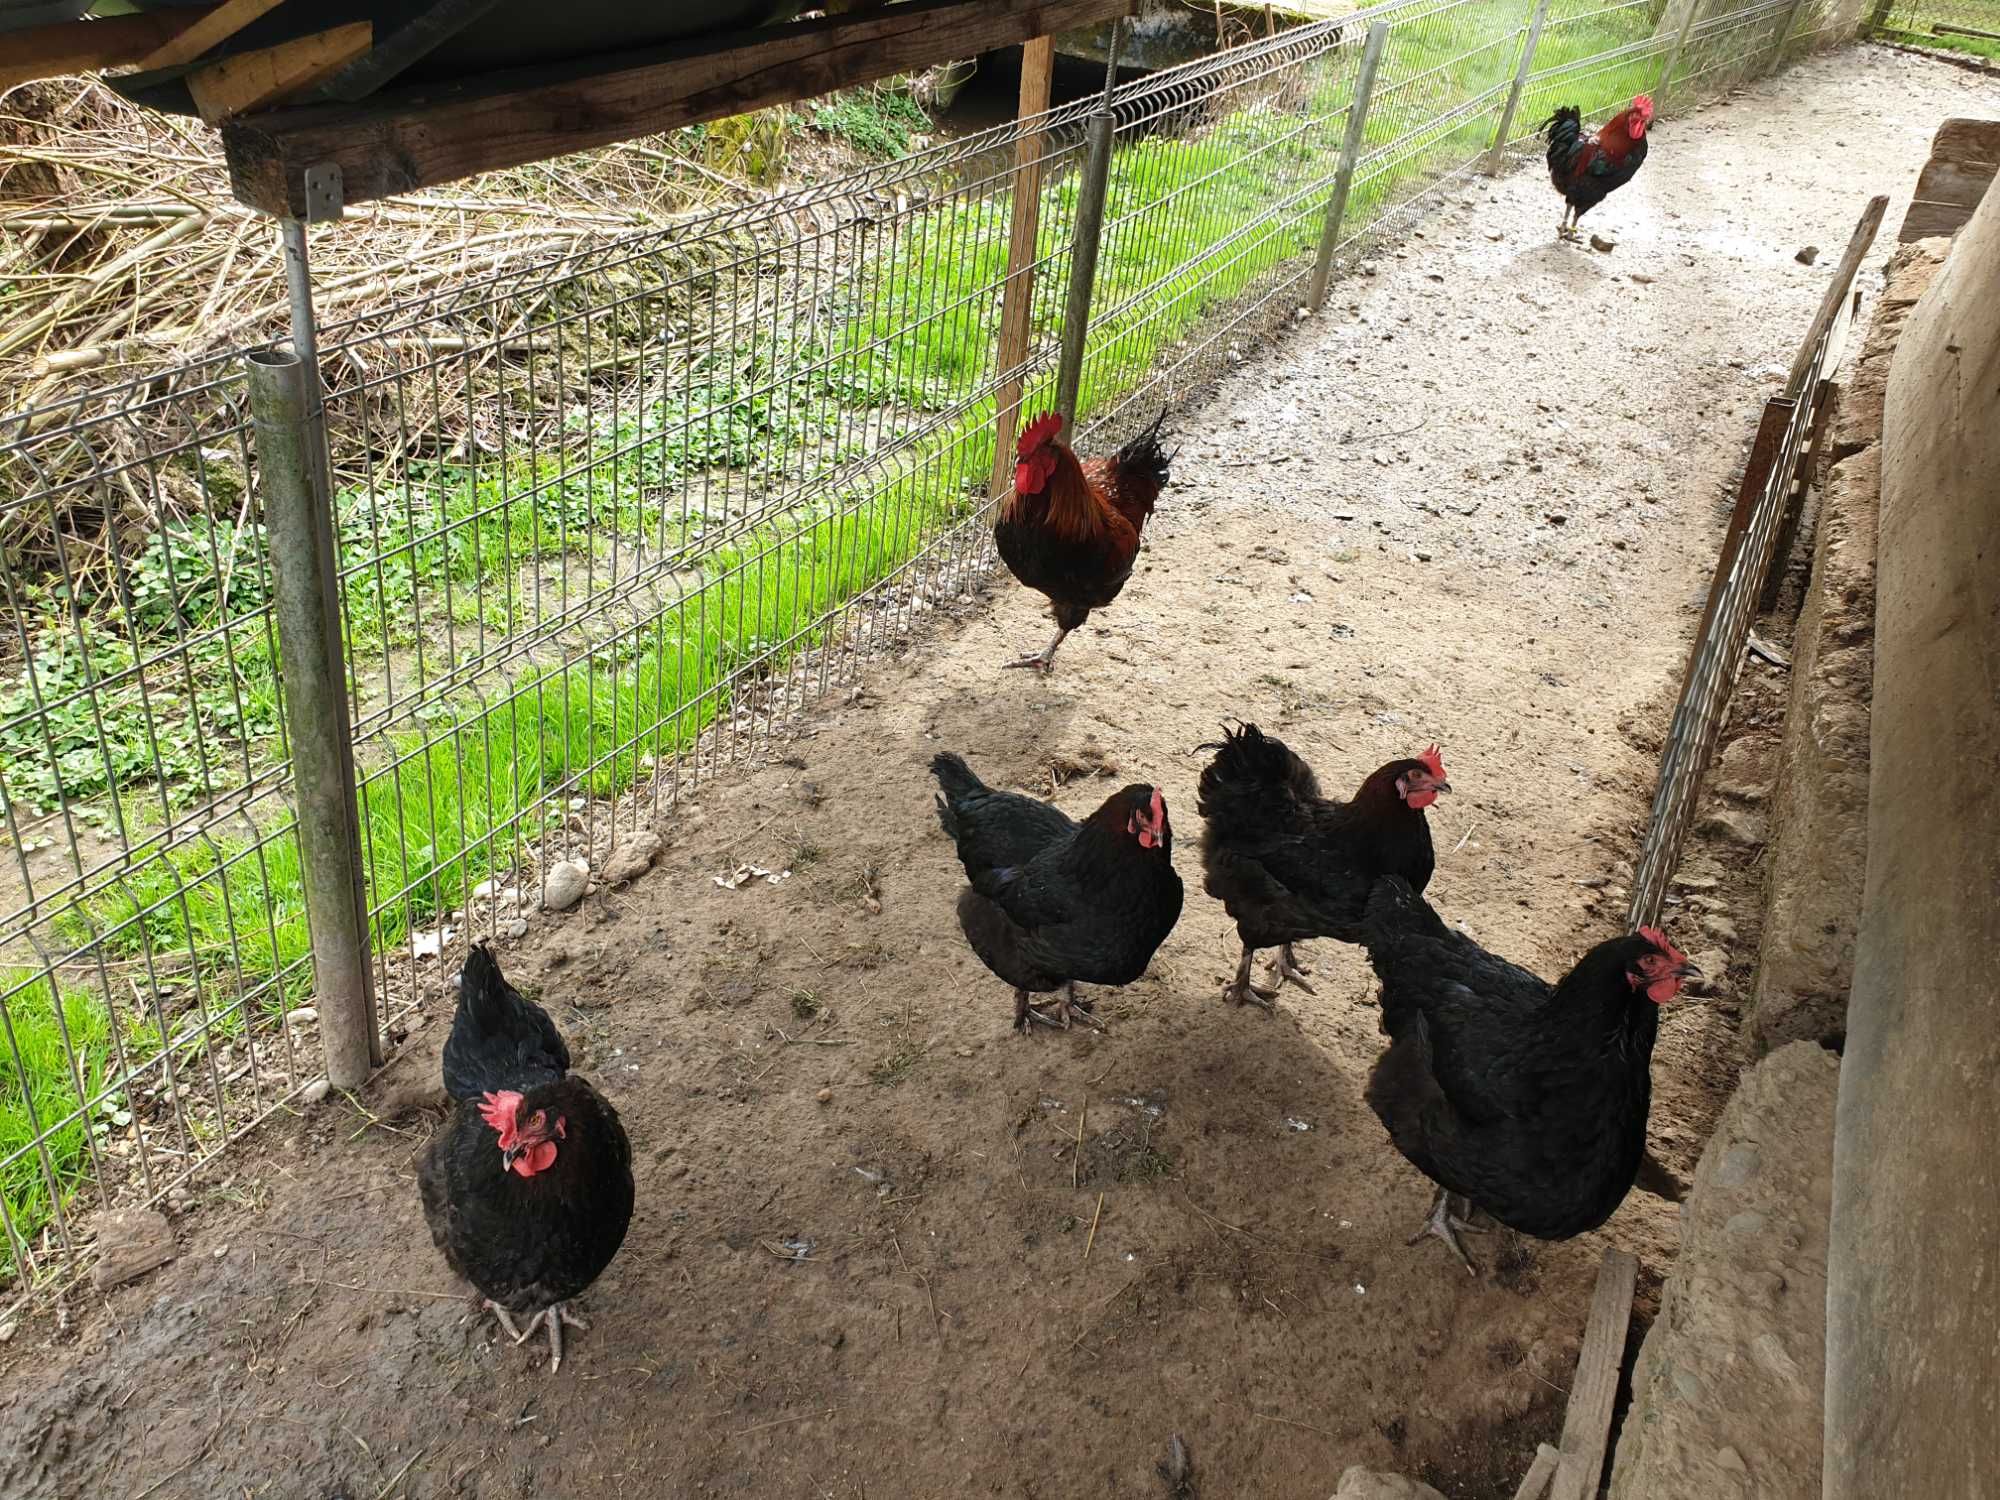 Ouă pentru incubat găini de rasă Marans negru arămiu